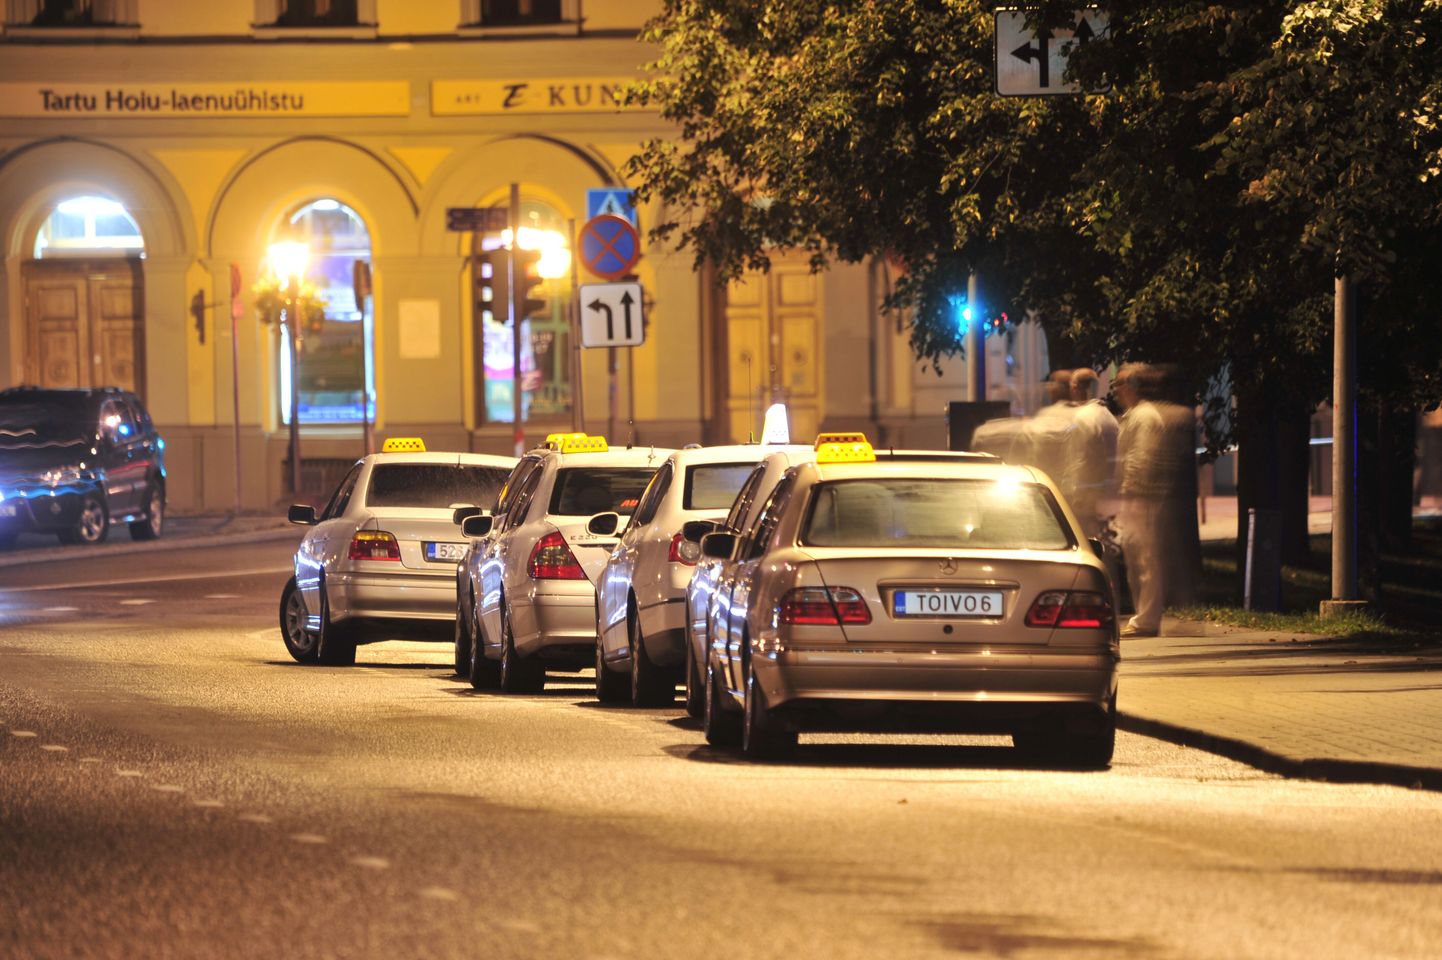 Taxigo uuendas mobiilirakendust ja lisas äppi kõikide taksode pildid.